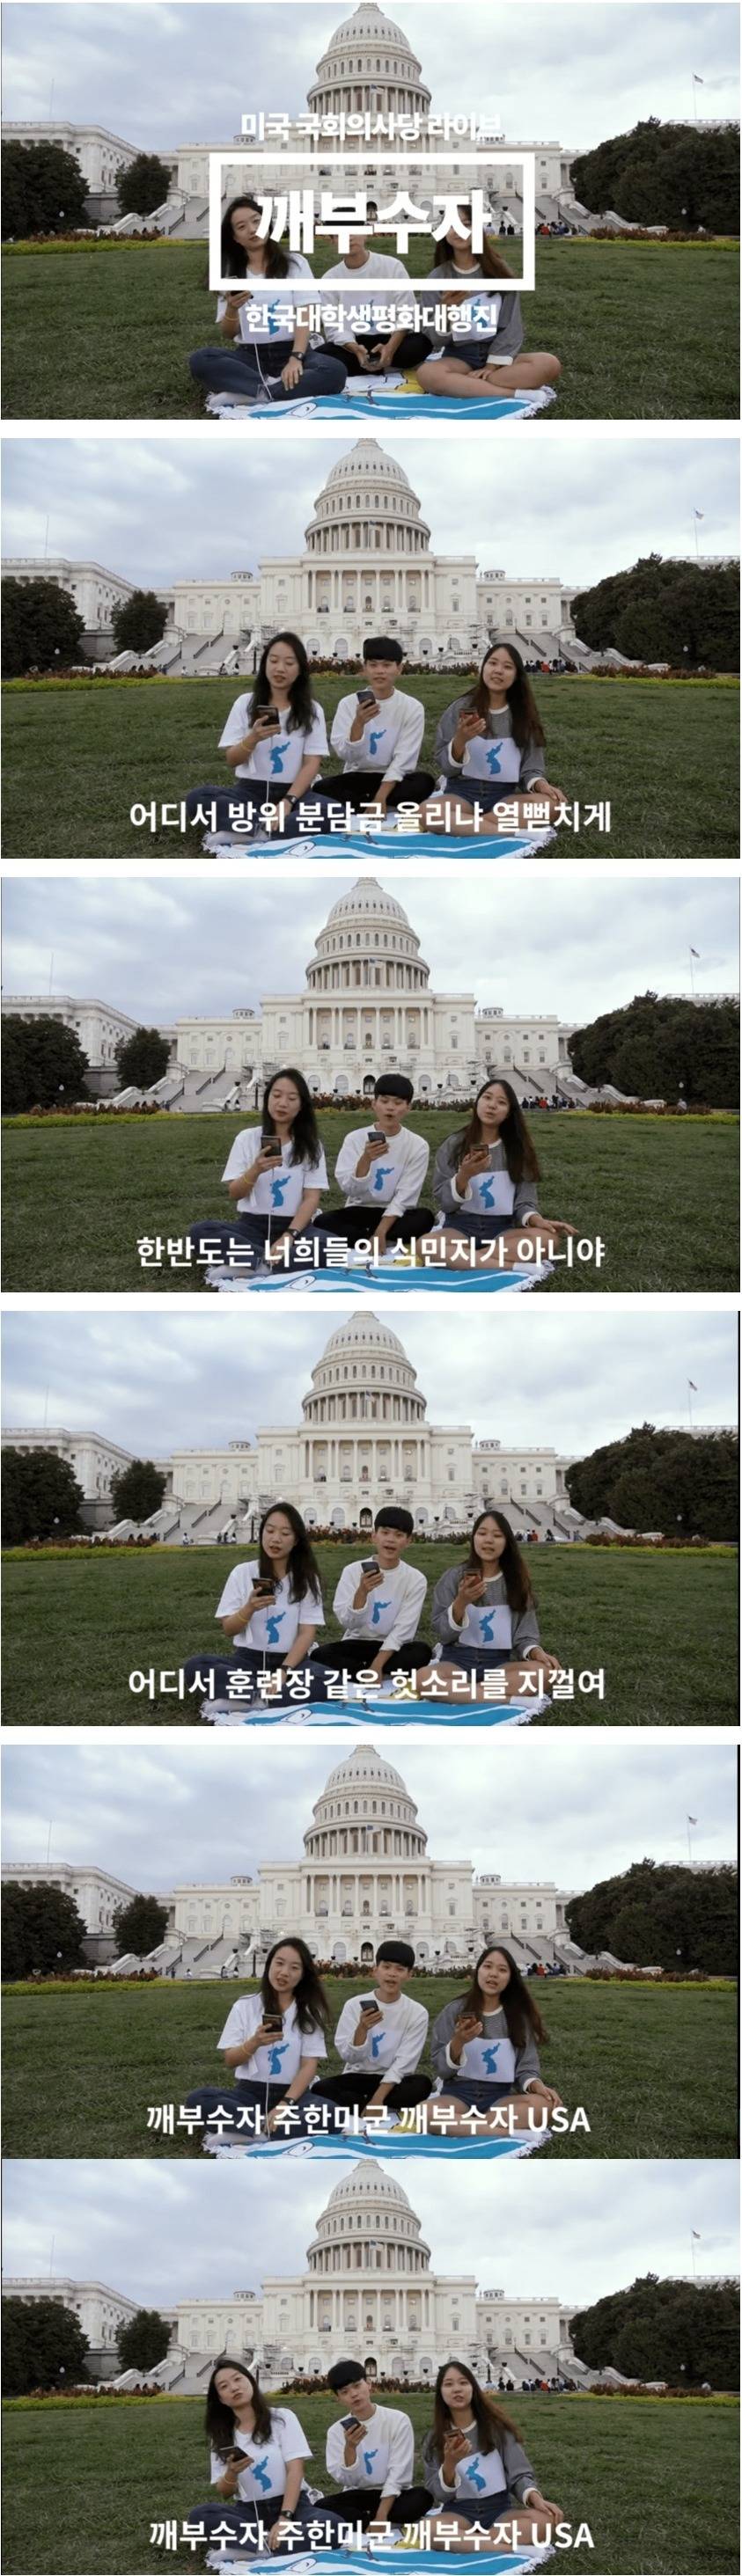 한국 대학생들이 미국 국회의사당 가서 부른 노래